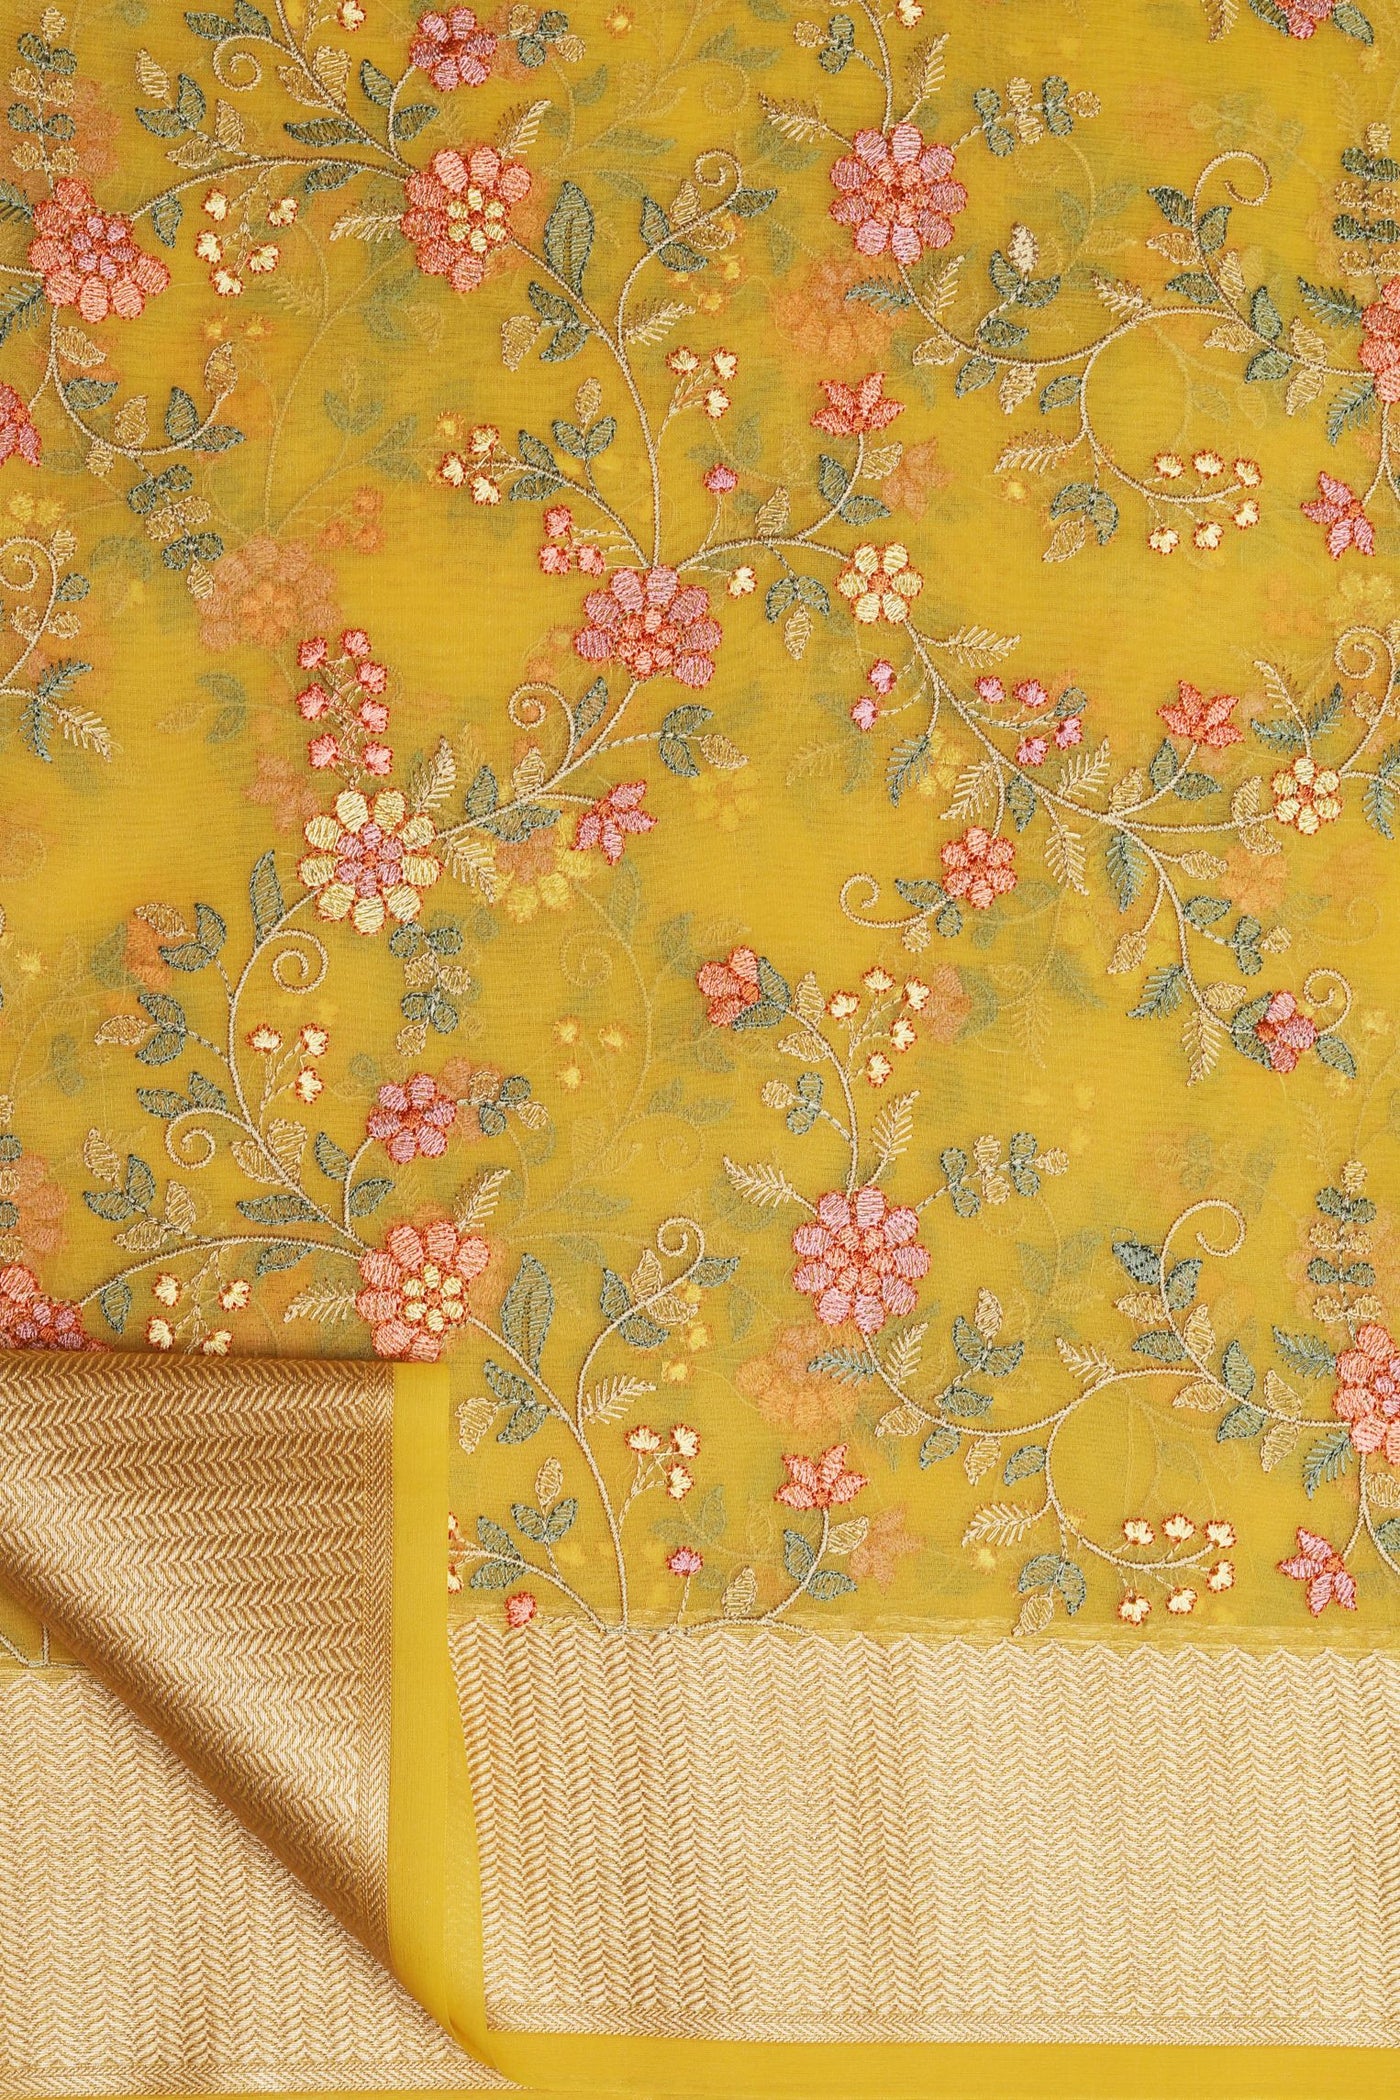 Mustard Cotton Silk Saree with Exquisite Thread Work